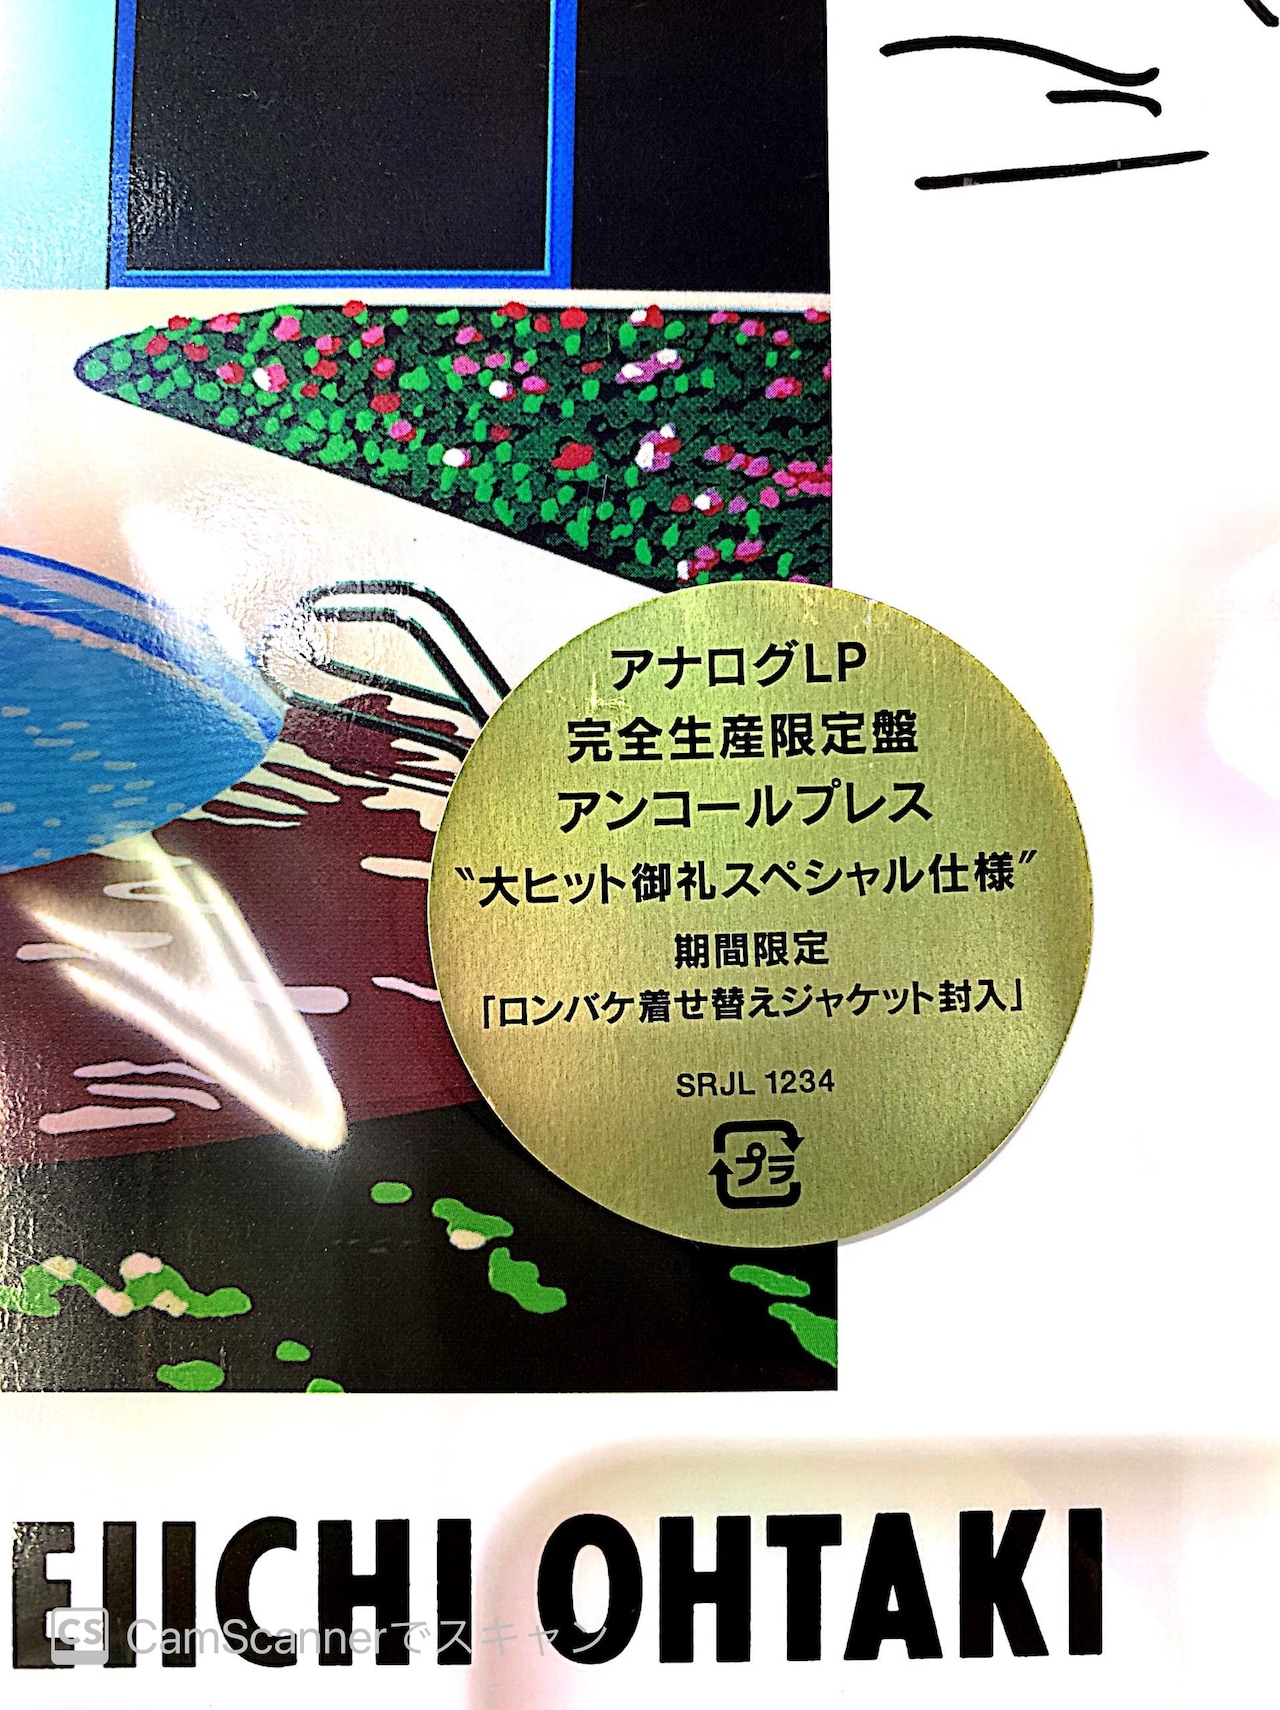 【完全生産限定アンコールプレス盤】大瀧詠一「A LONG VACATION 40th Anniversary Edition」12インチアナログ盤